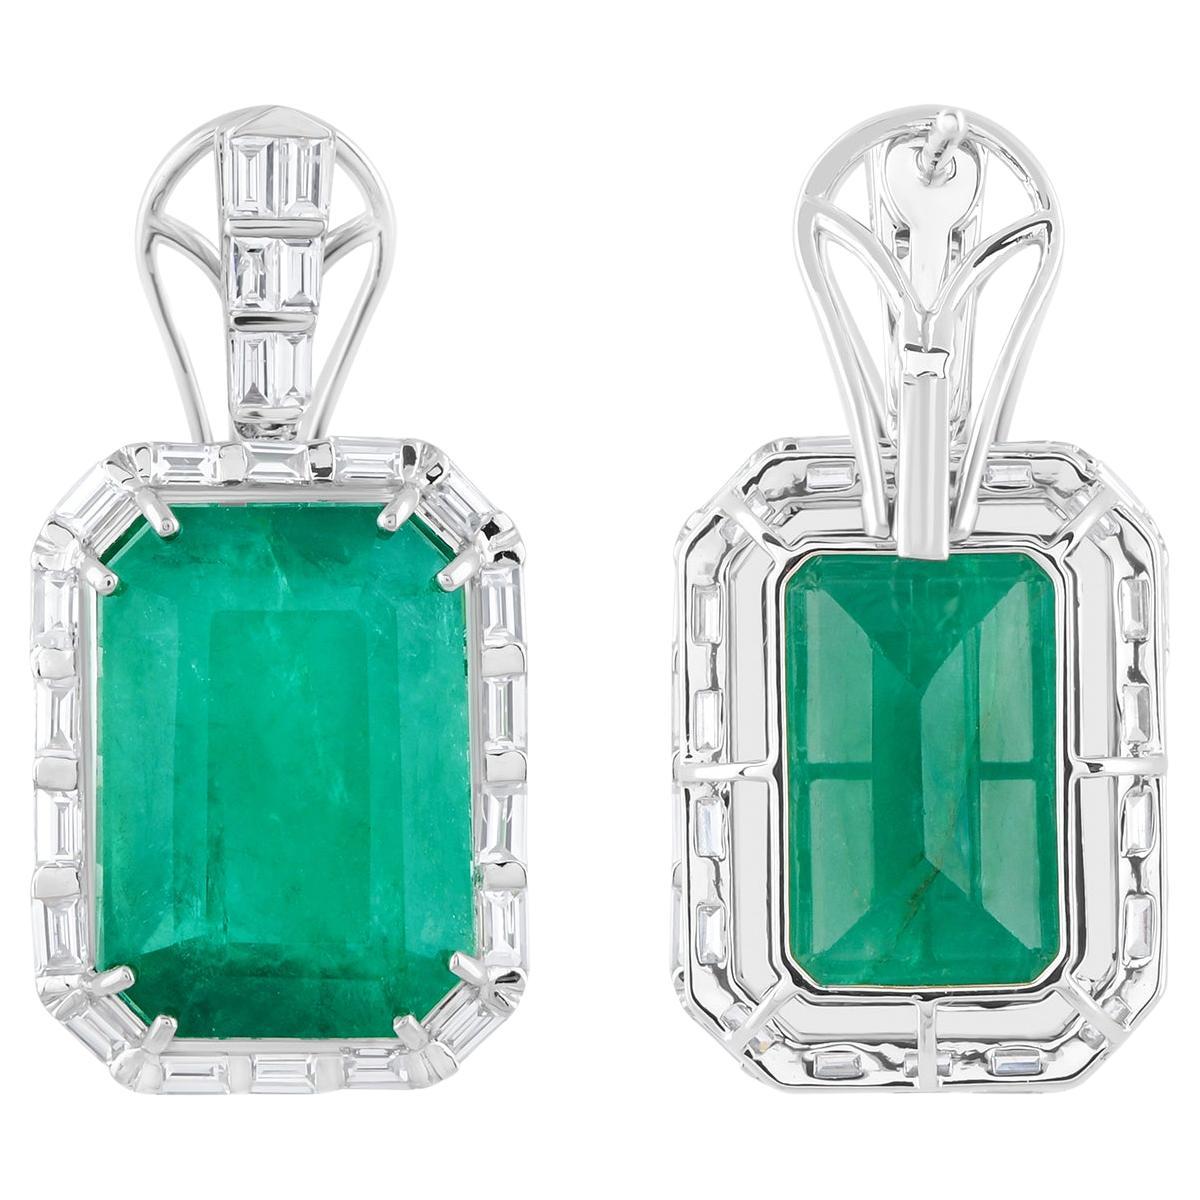 Real Zambian Emerald Gemstone Earrings Diamond 14 Karat White Gold Fine Jewelry For Sale